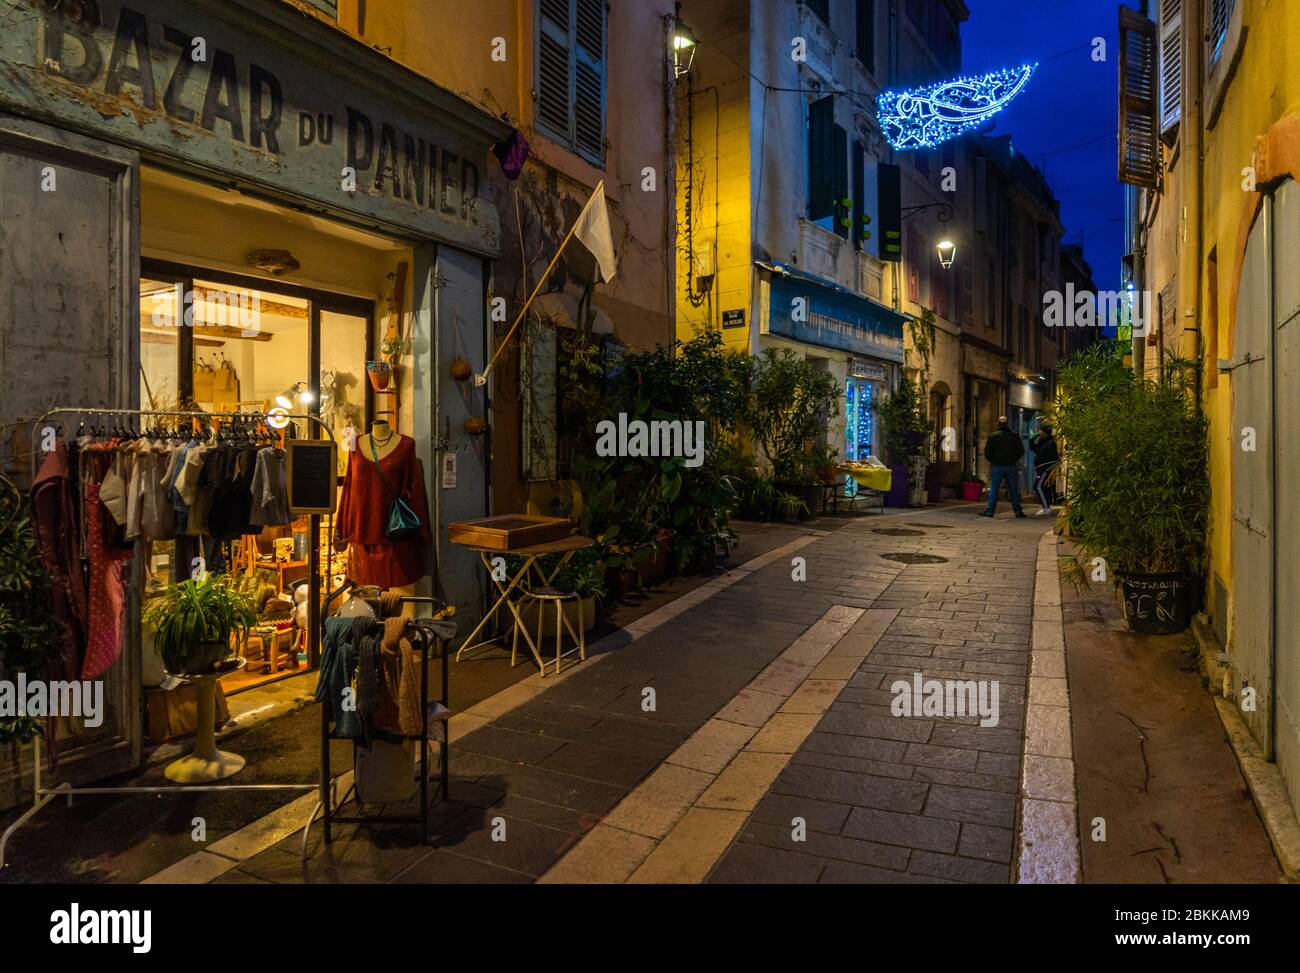 Marseille, France, 2 janvier 2020 - vue de nuit sur le quartier du Panier, le plus ancien quartier de Marseille avec ses rues étroites et ses boutiques typiques Banque D'Images